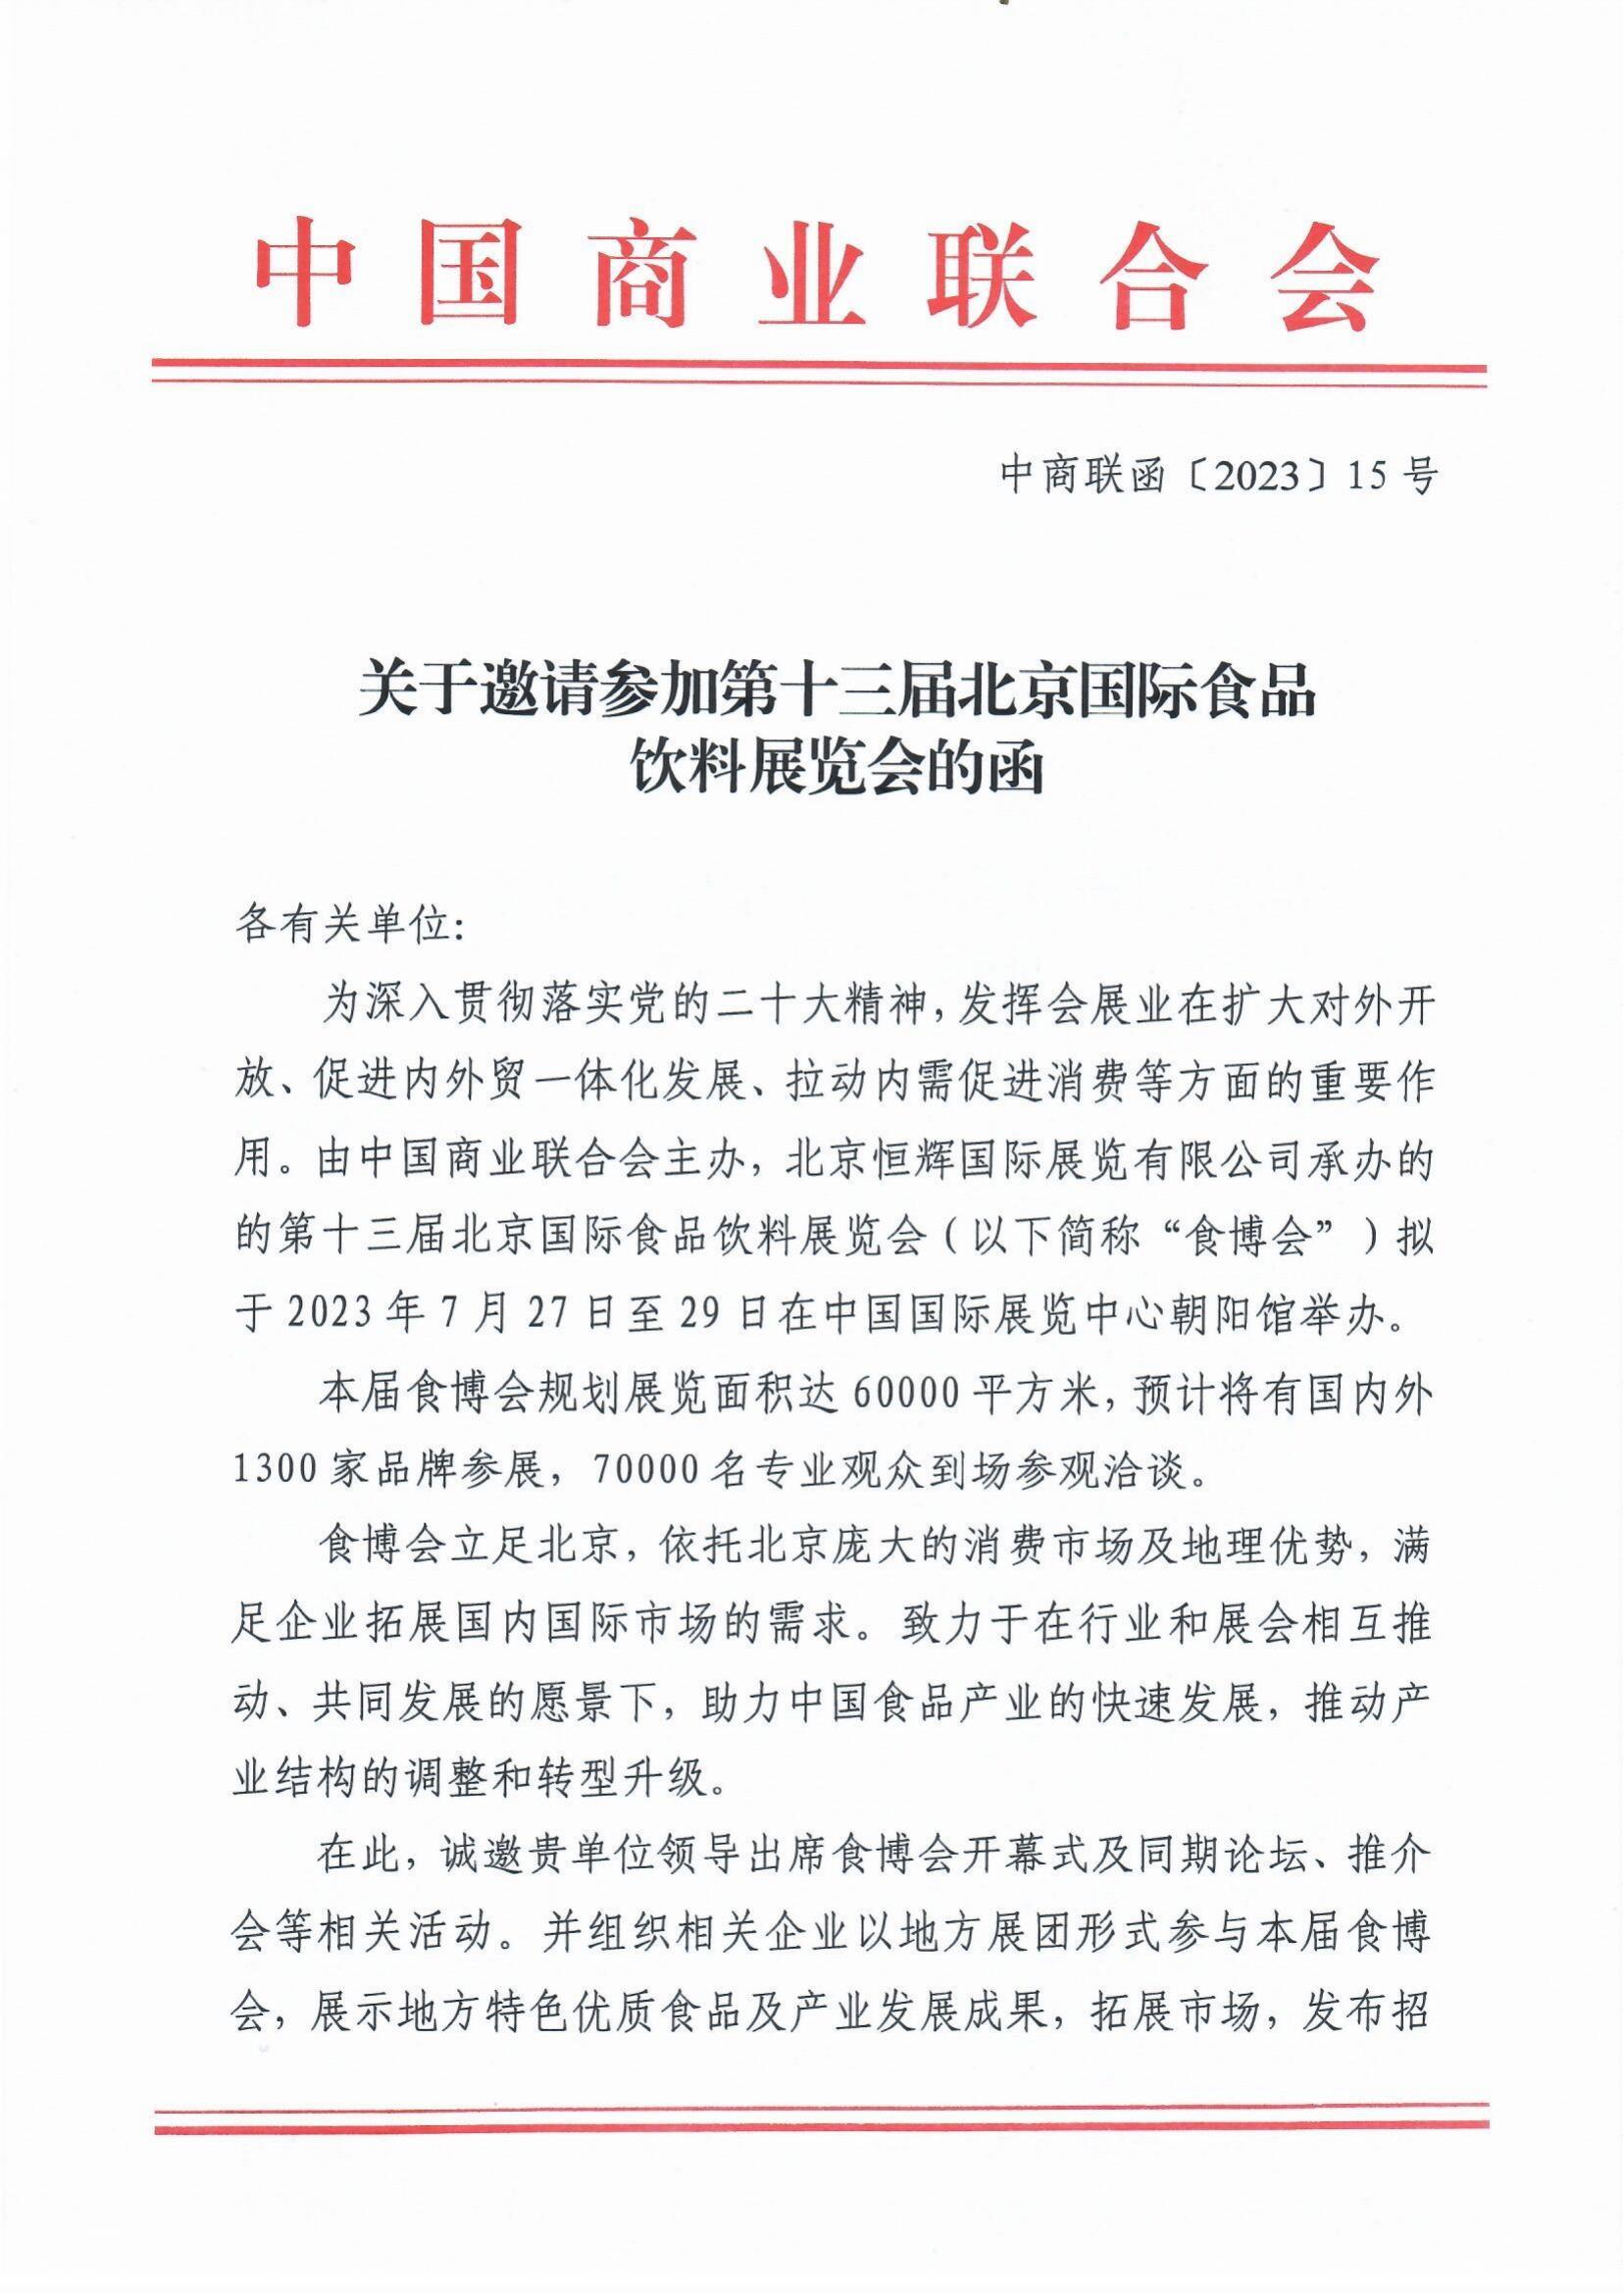 中国商业联合会关于邀请参加第十三届北京国际食品饮料展览会的函(图1)